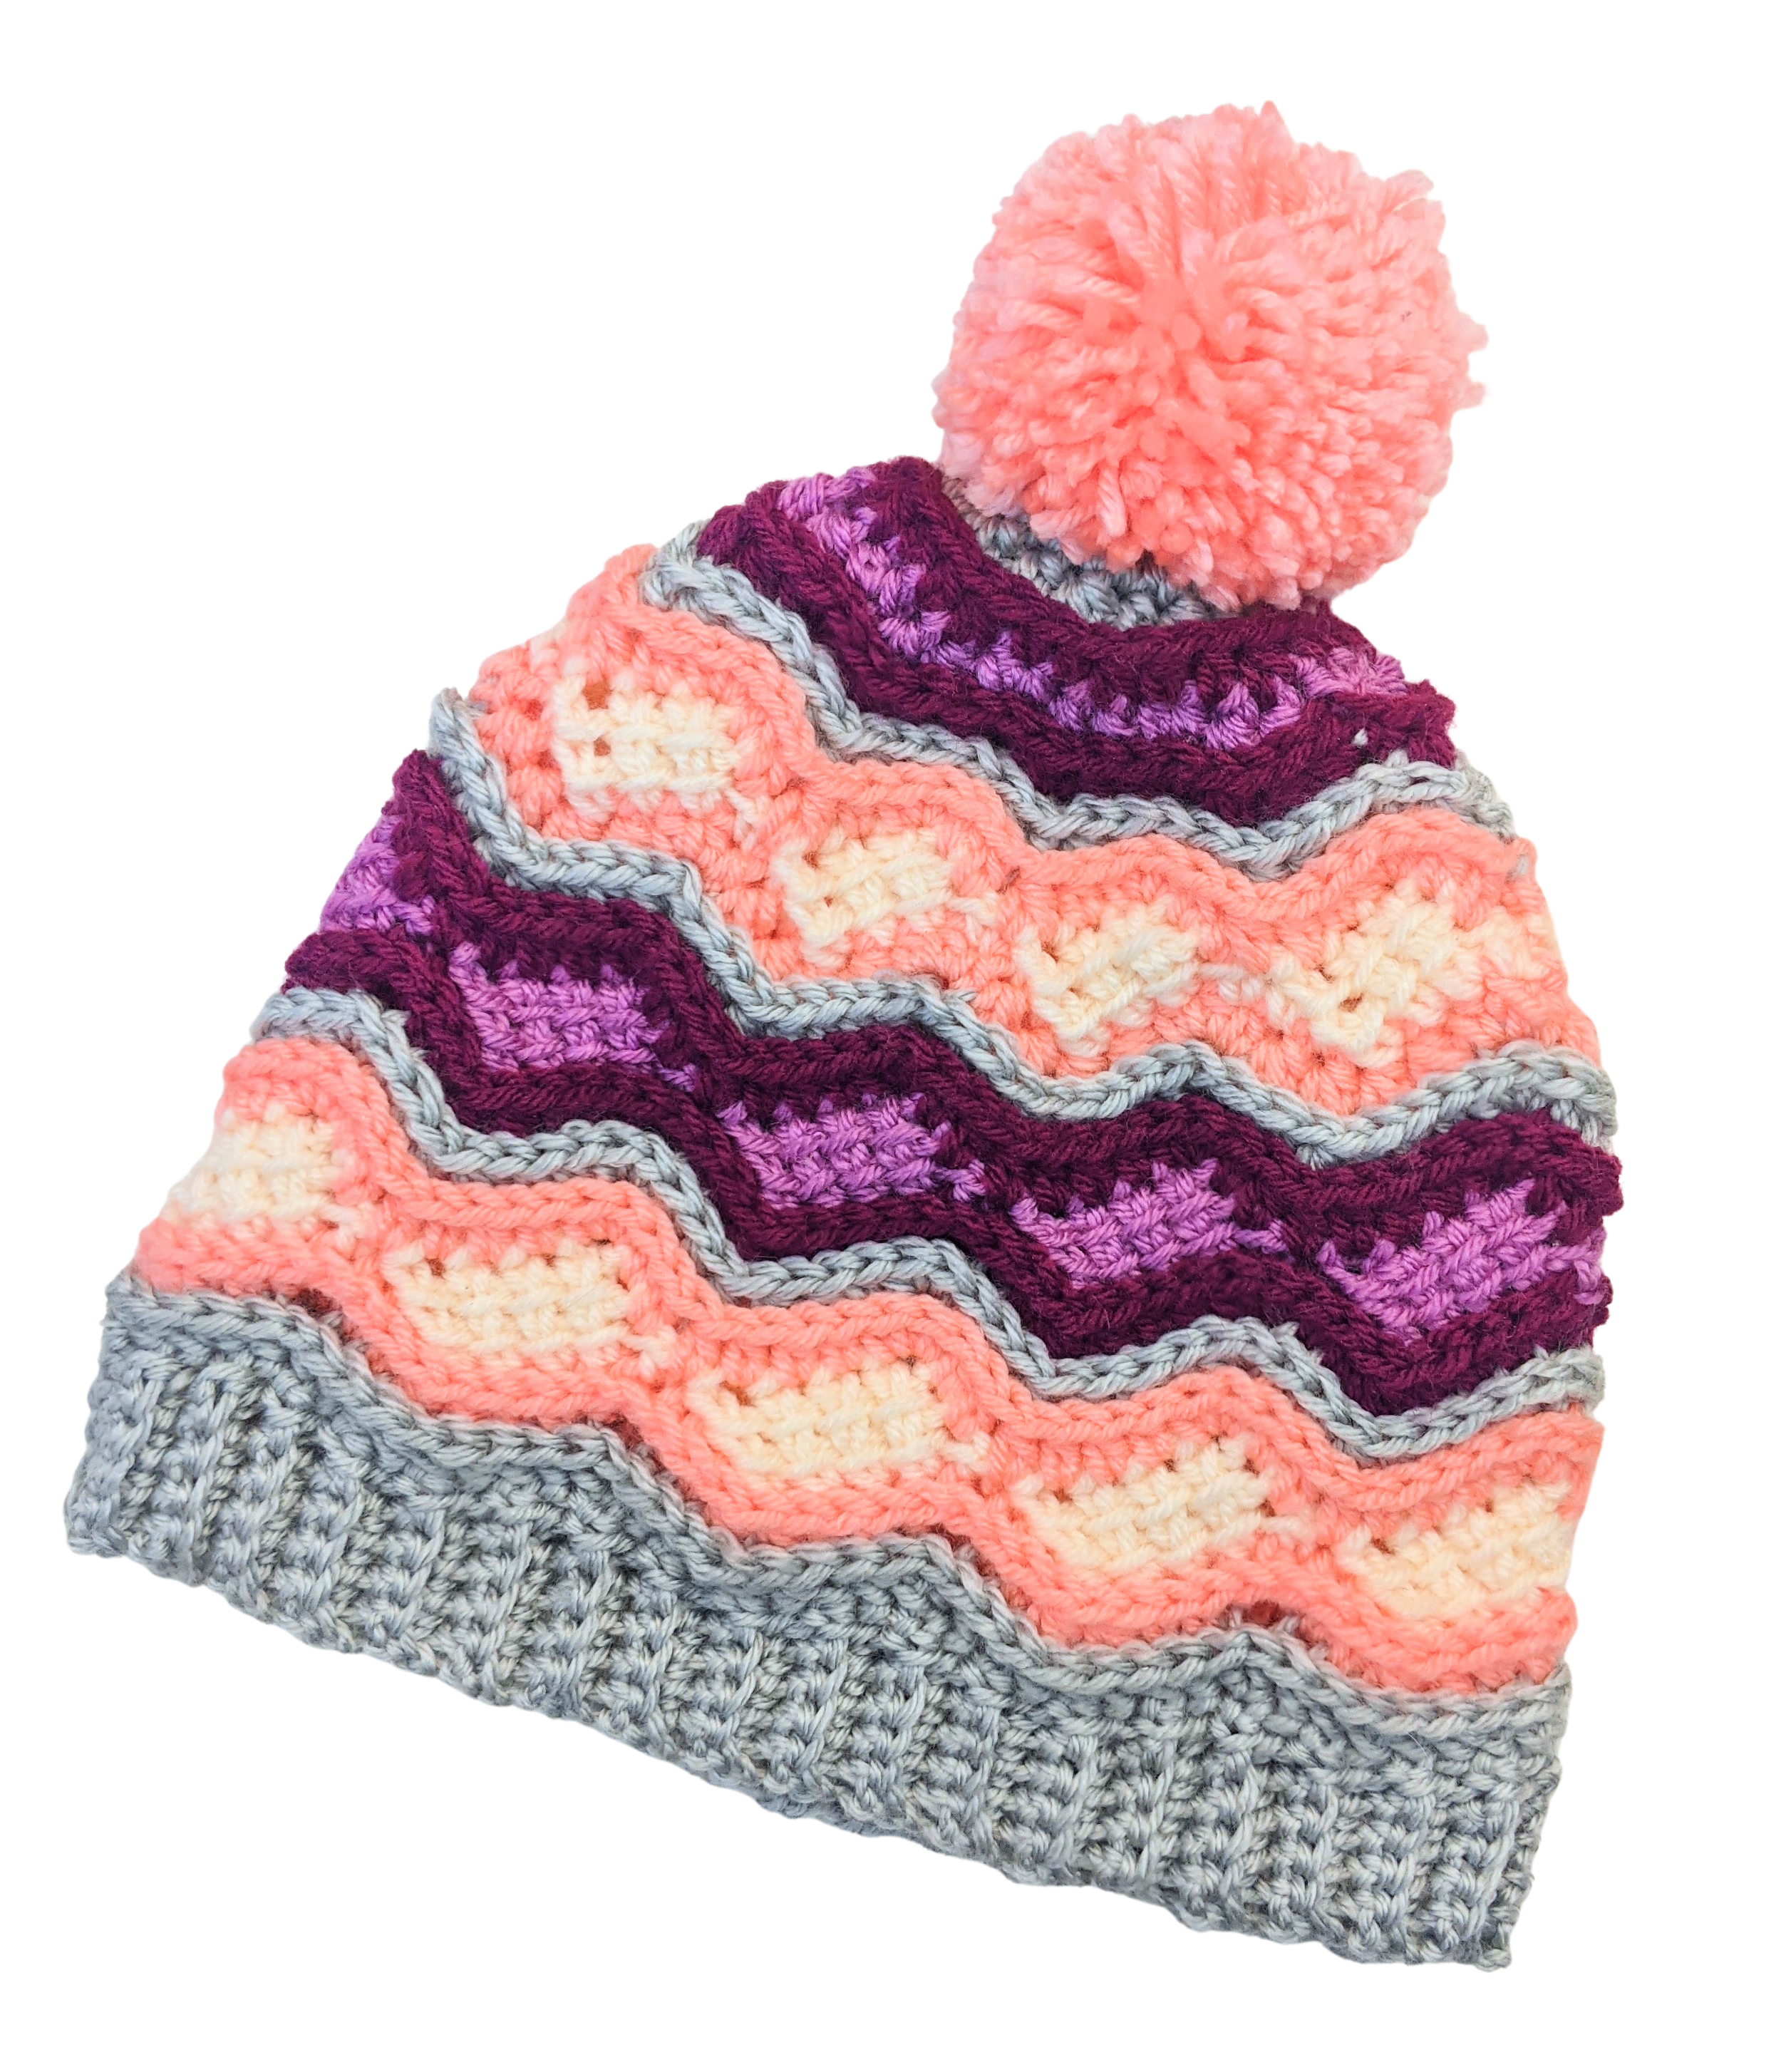 Bavaria Crochet Hat and Mitten Pattern